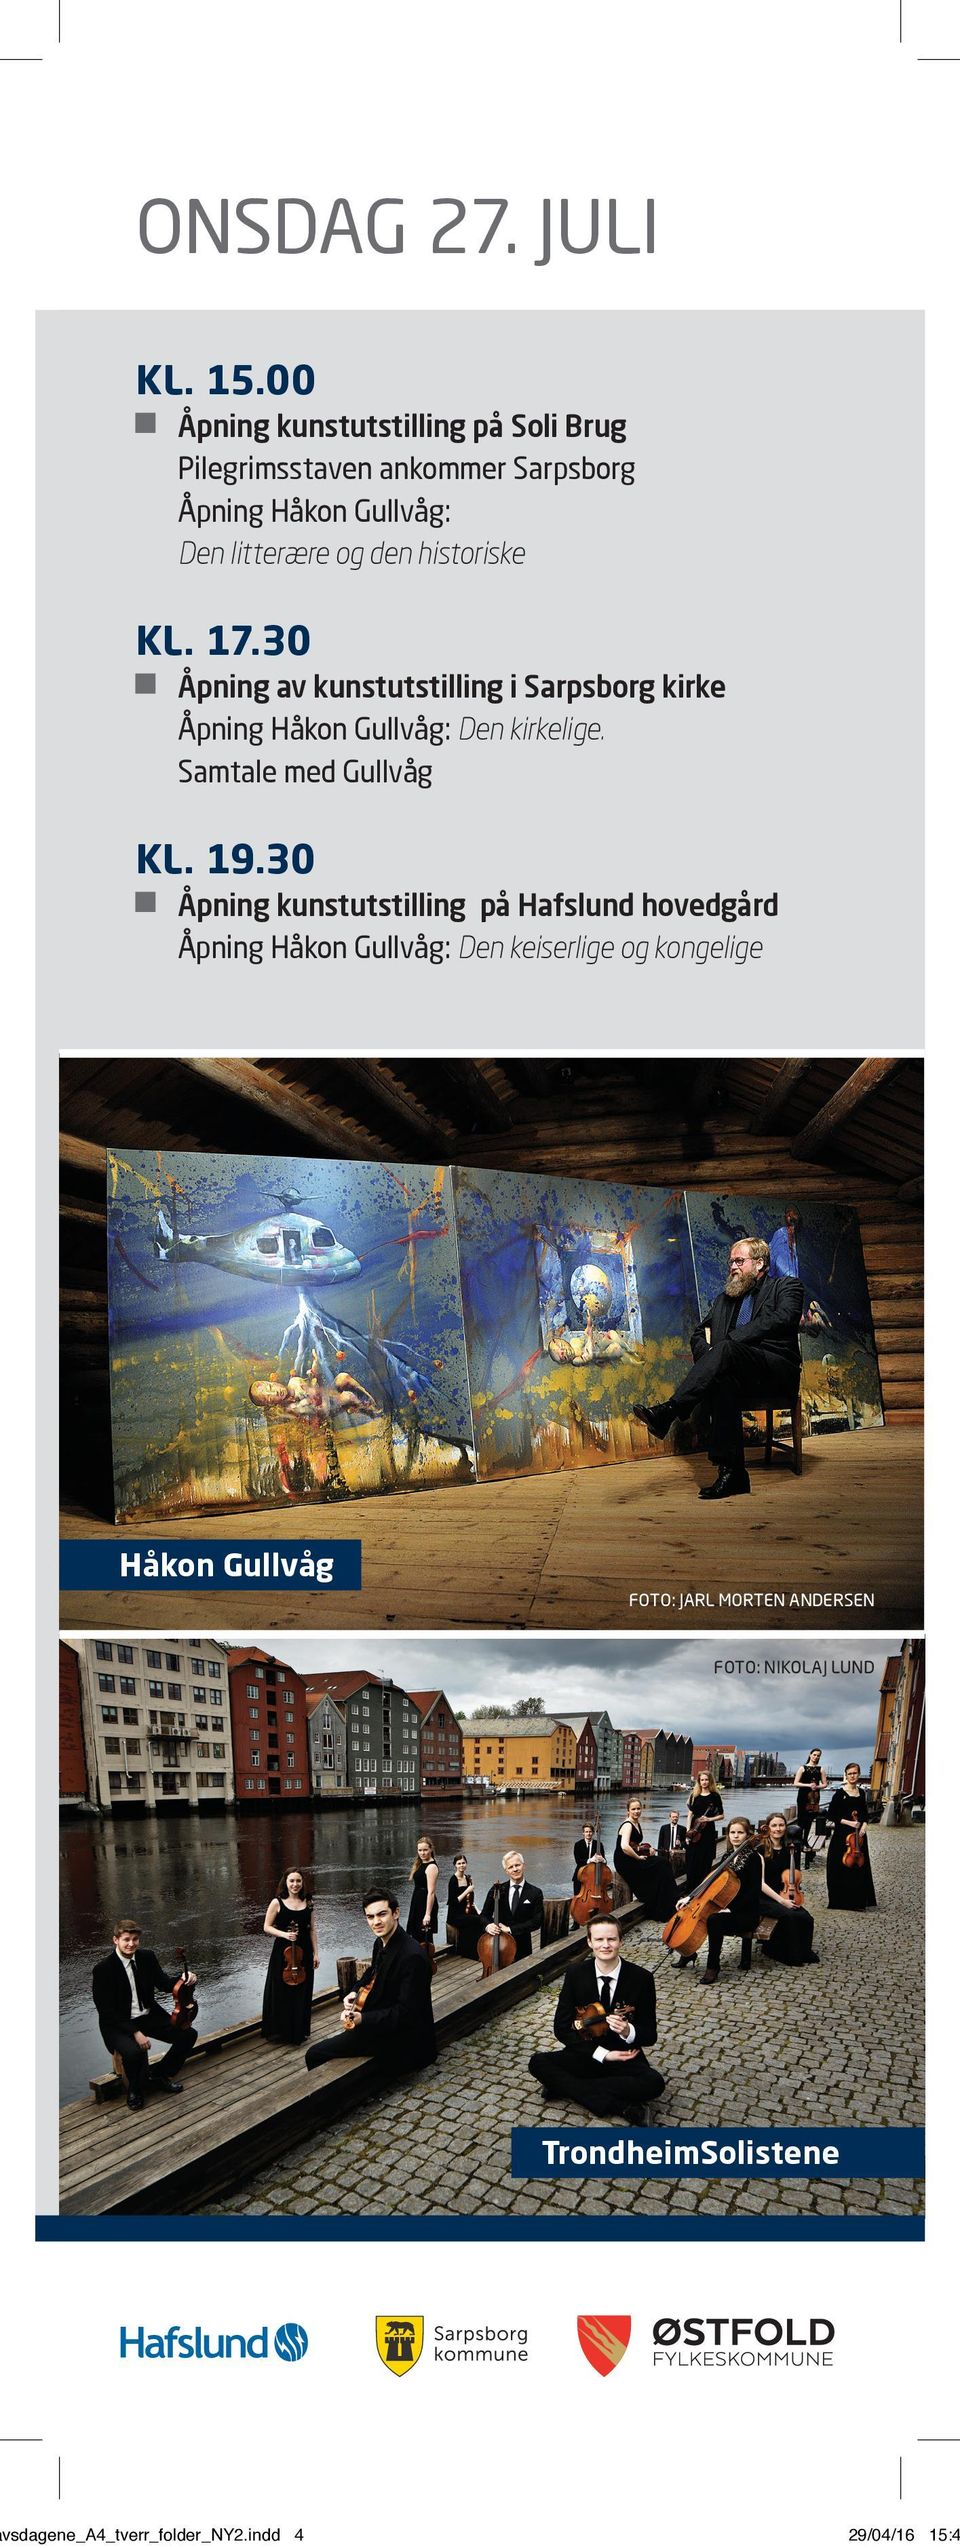 historiske KL. 17.30 Åpning av kunstutstilling i Sarpsborg kirke Åpning Håkon Gullvåg: Den kirkelige.